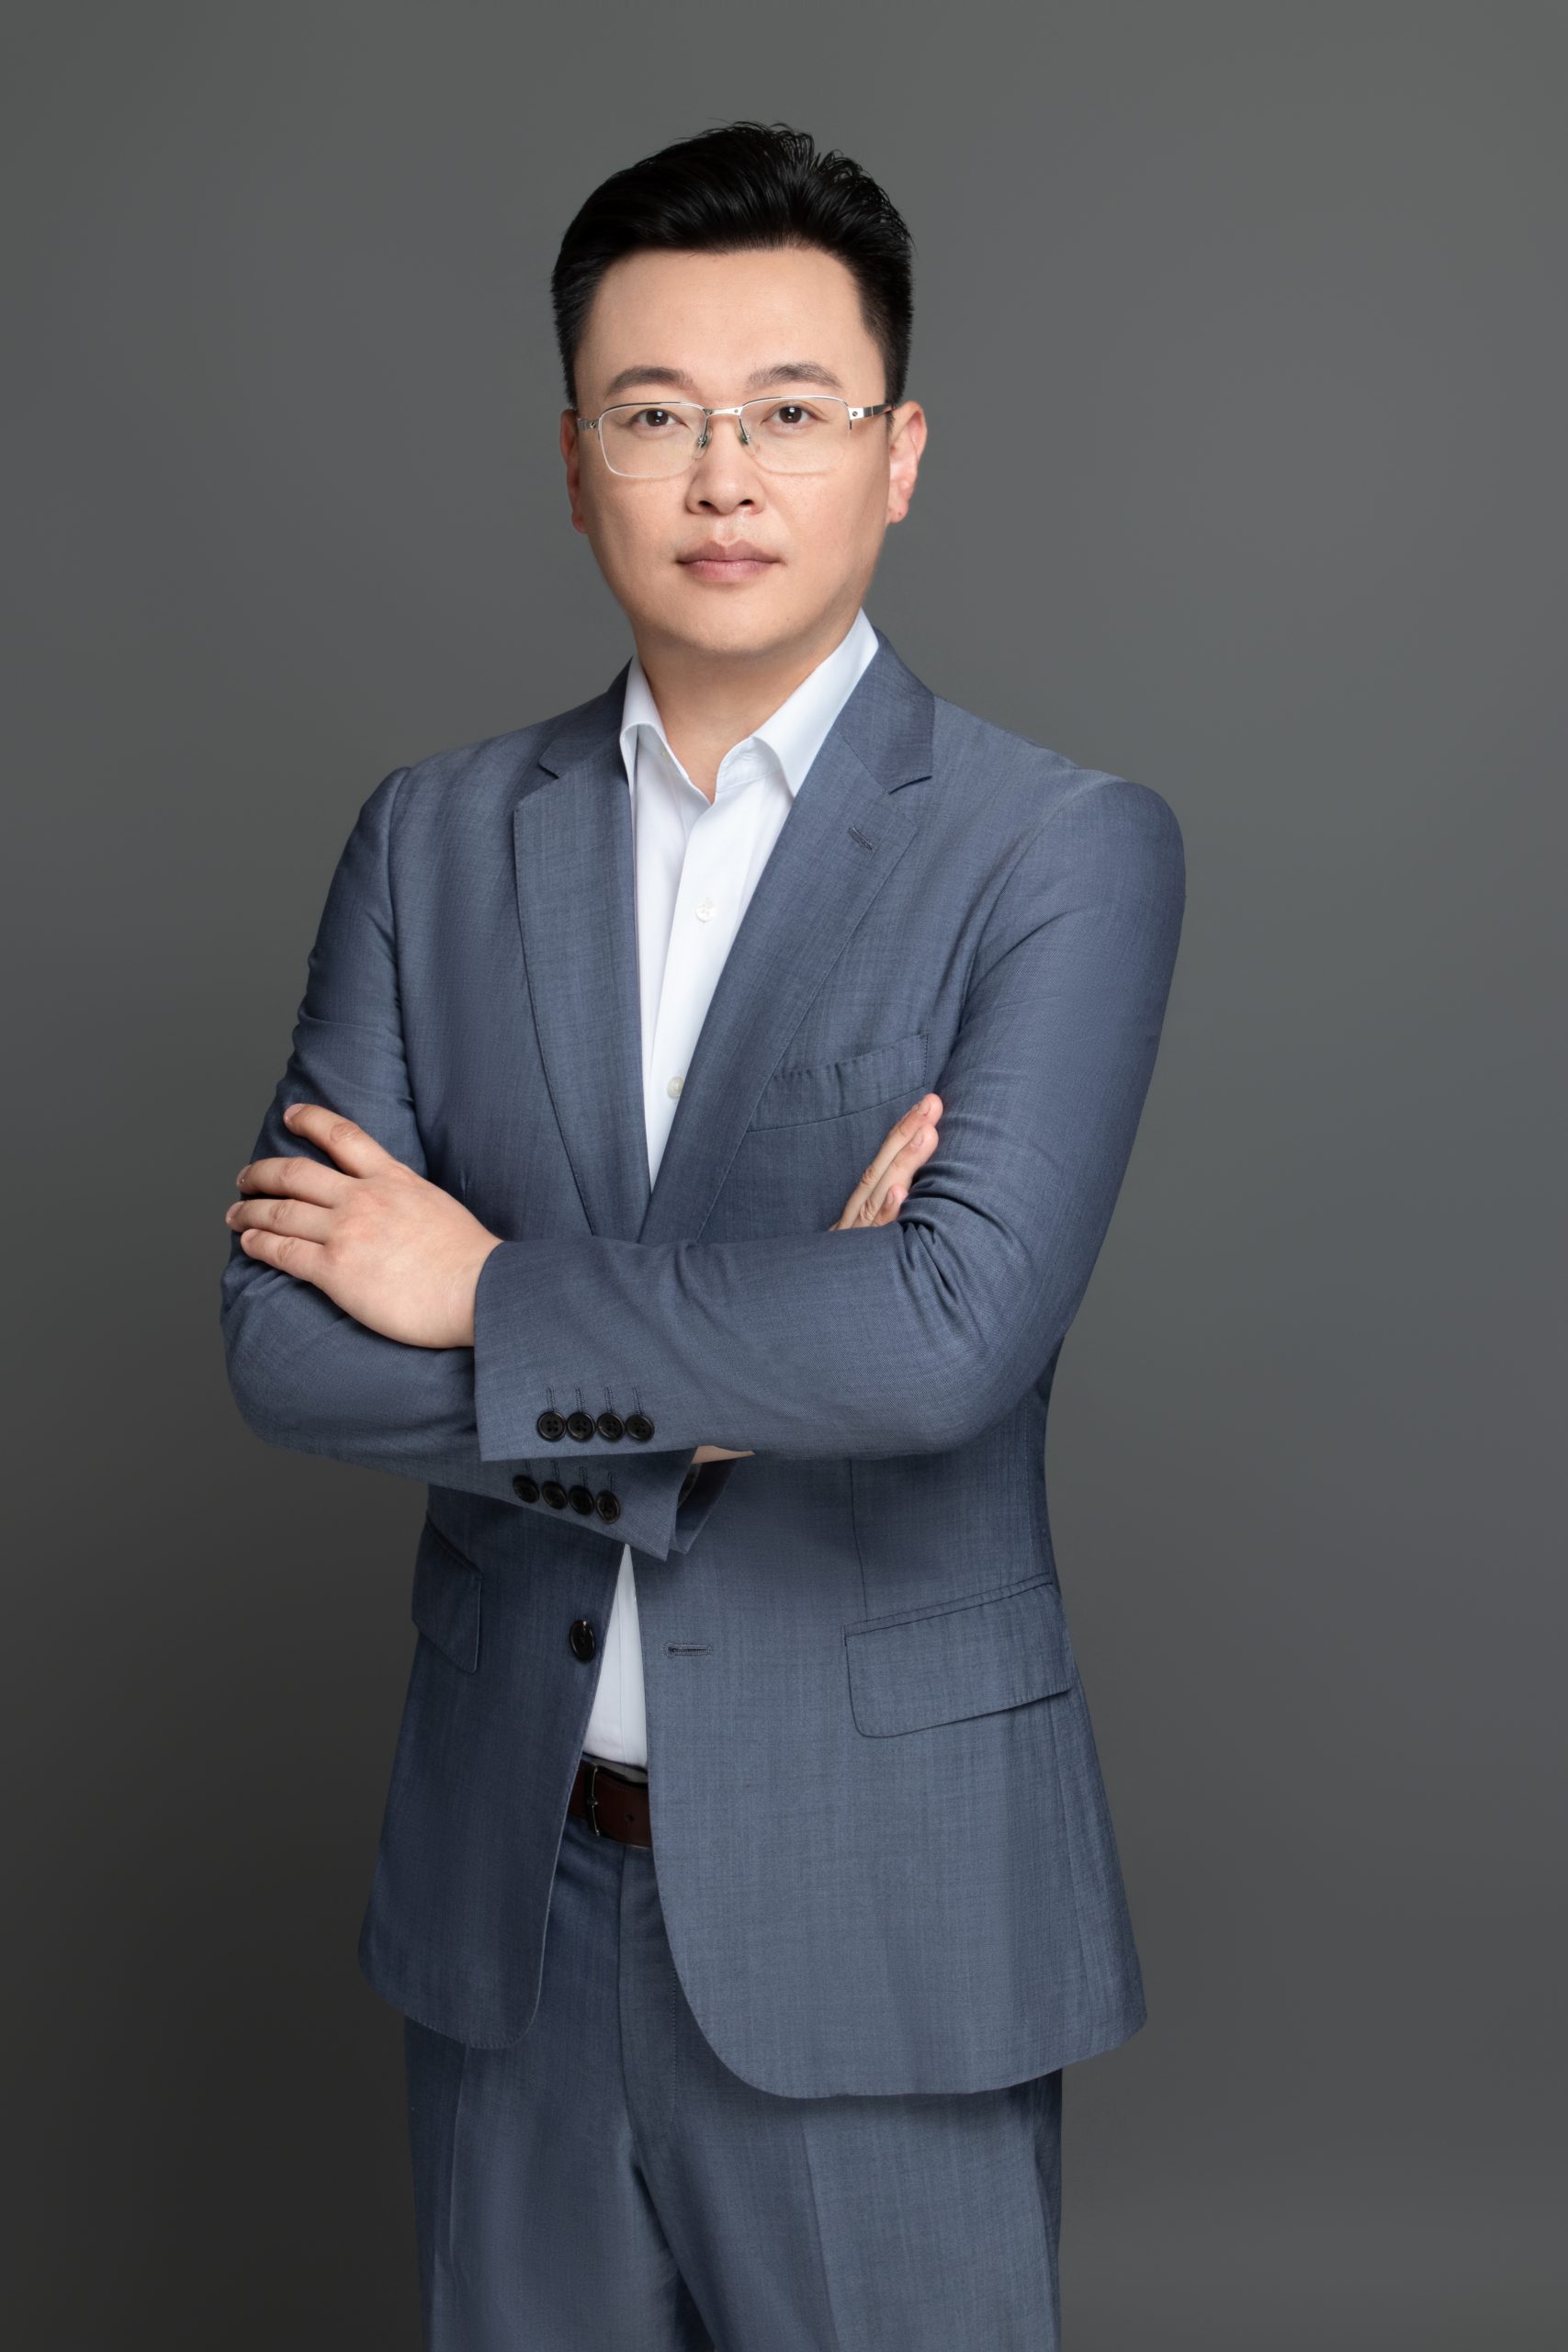 微软任命包嘉峰为中国区总裁